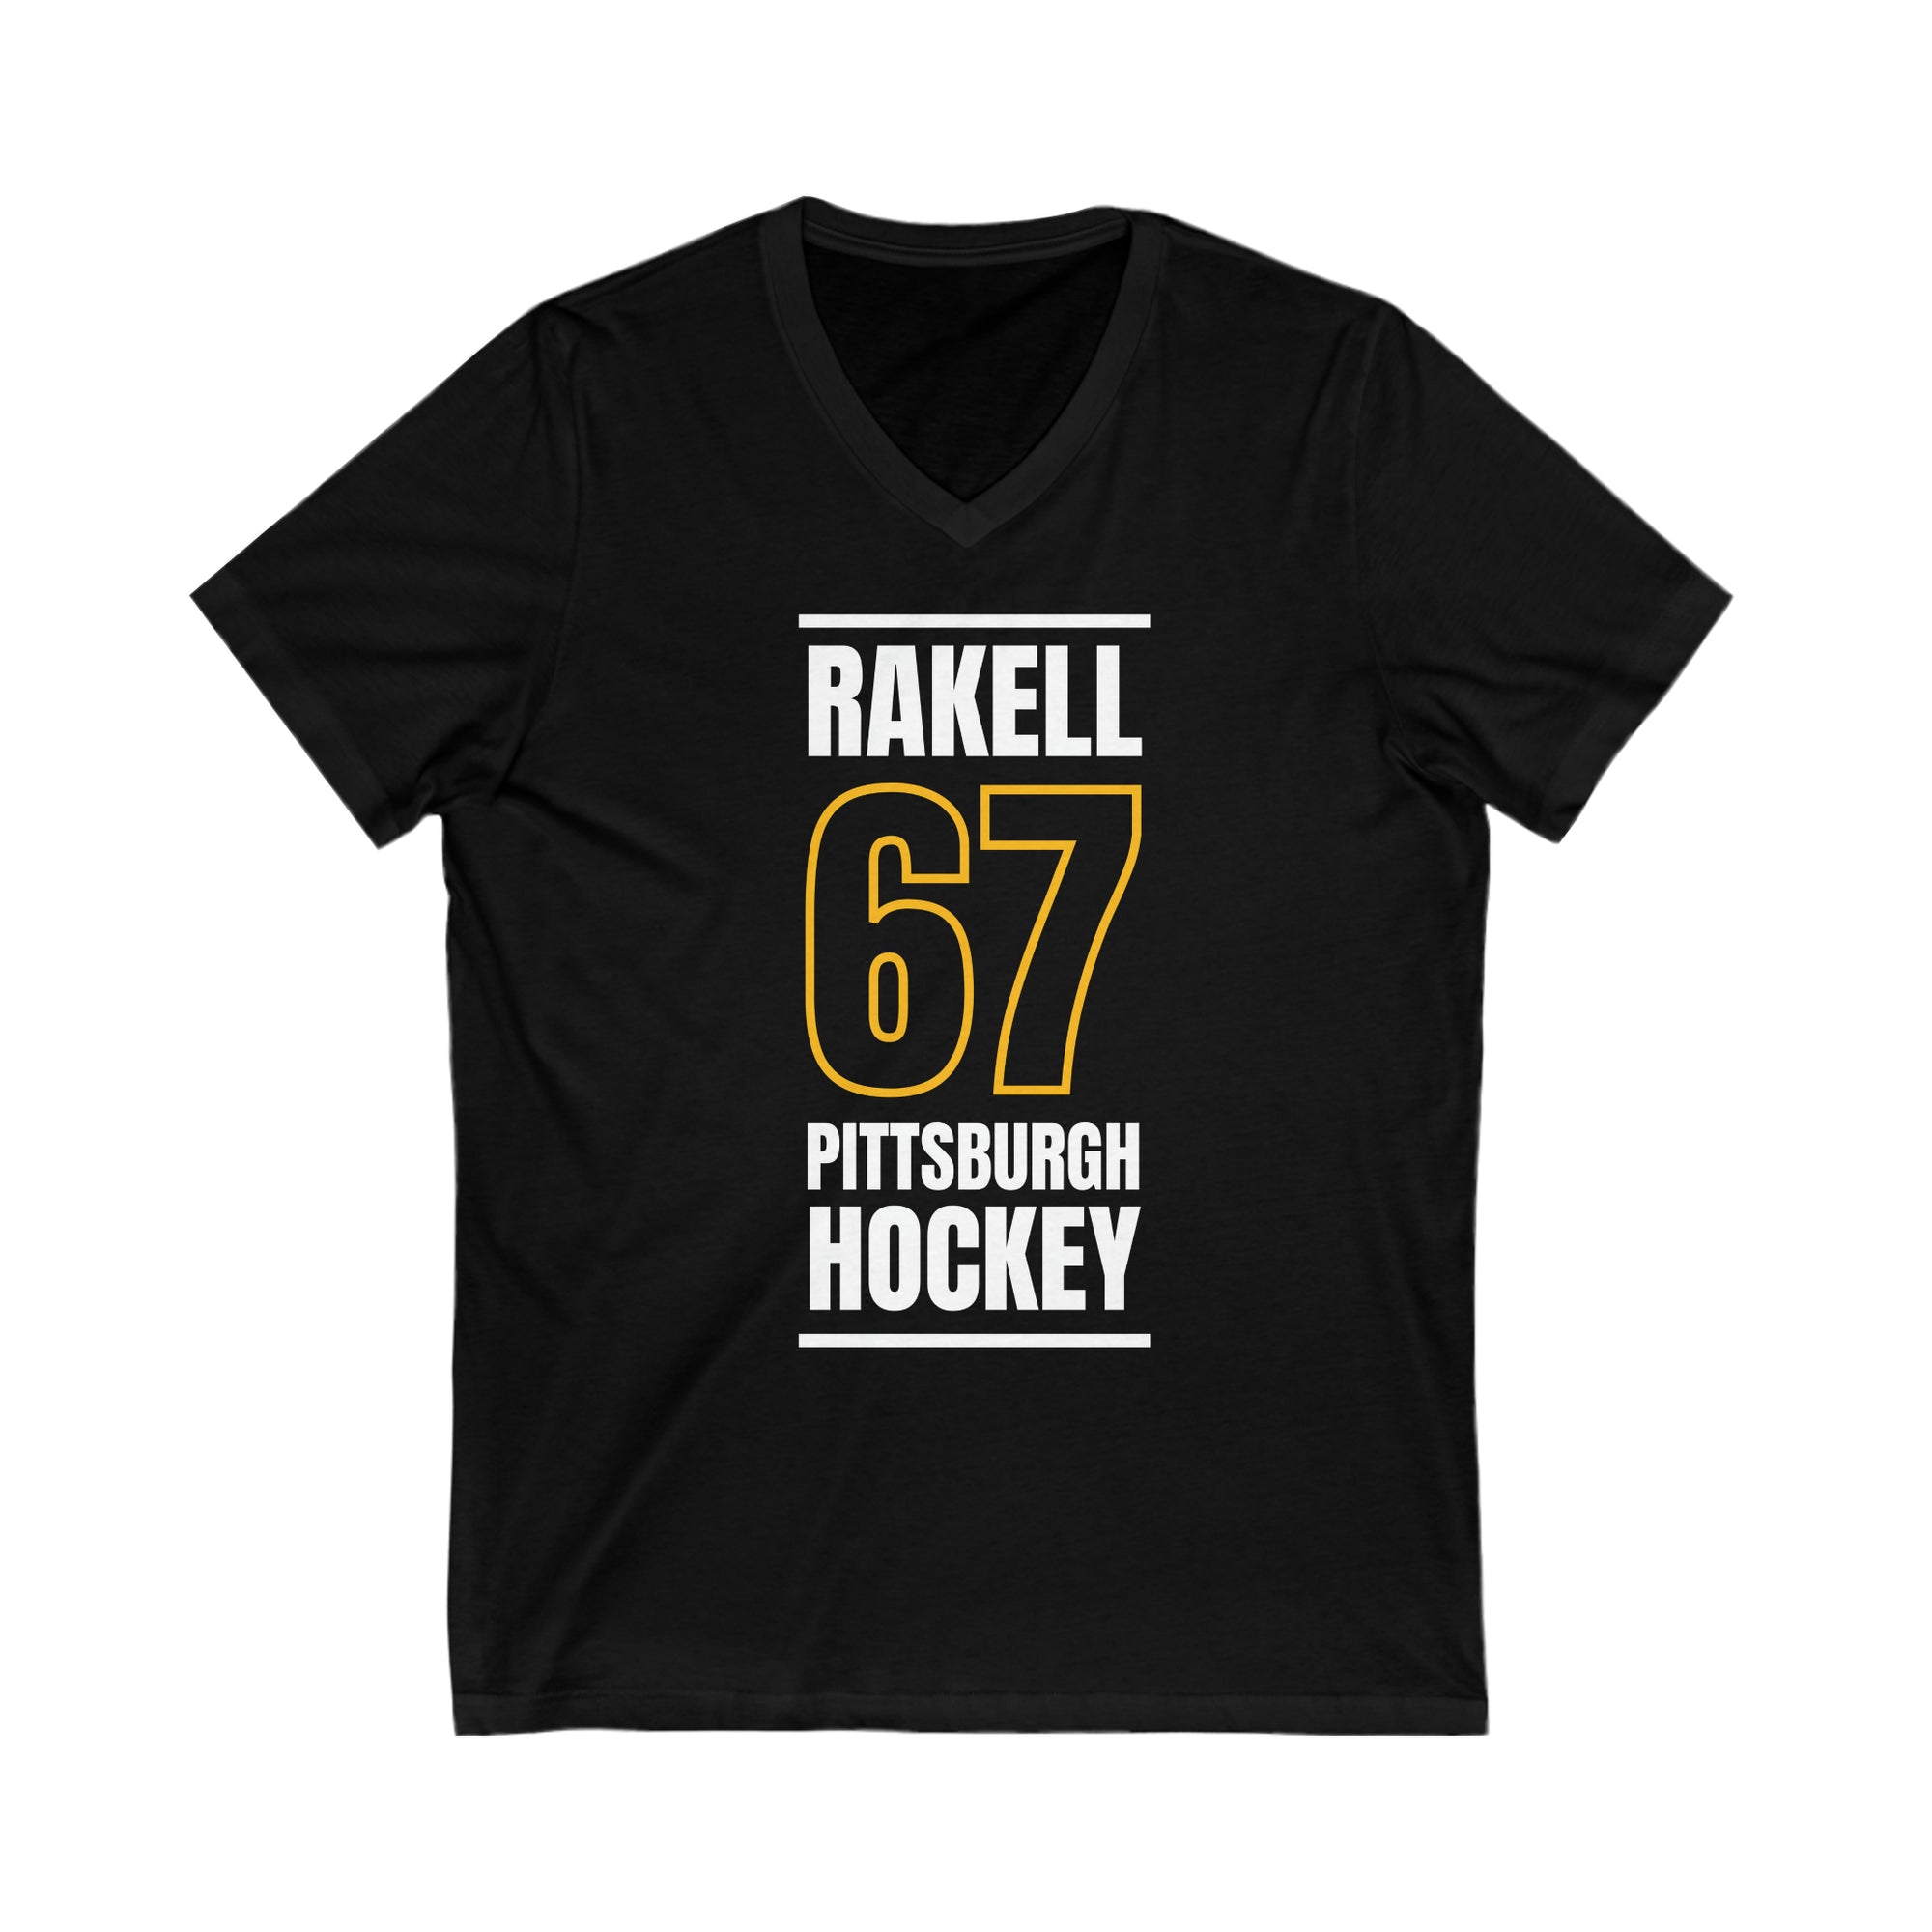 Rakell 67 Pittsburgh Hockey Black Vertical Design Unisex V-Neck Tee